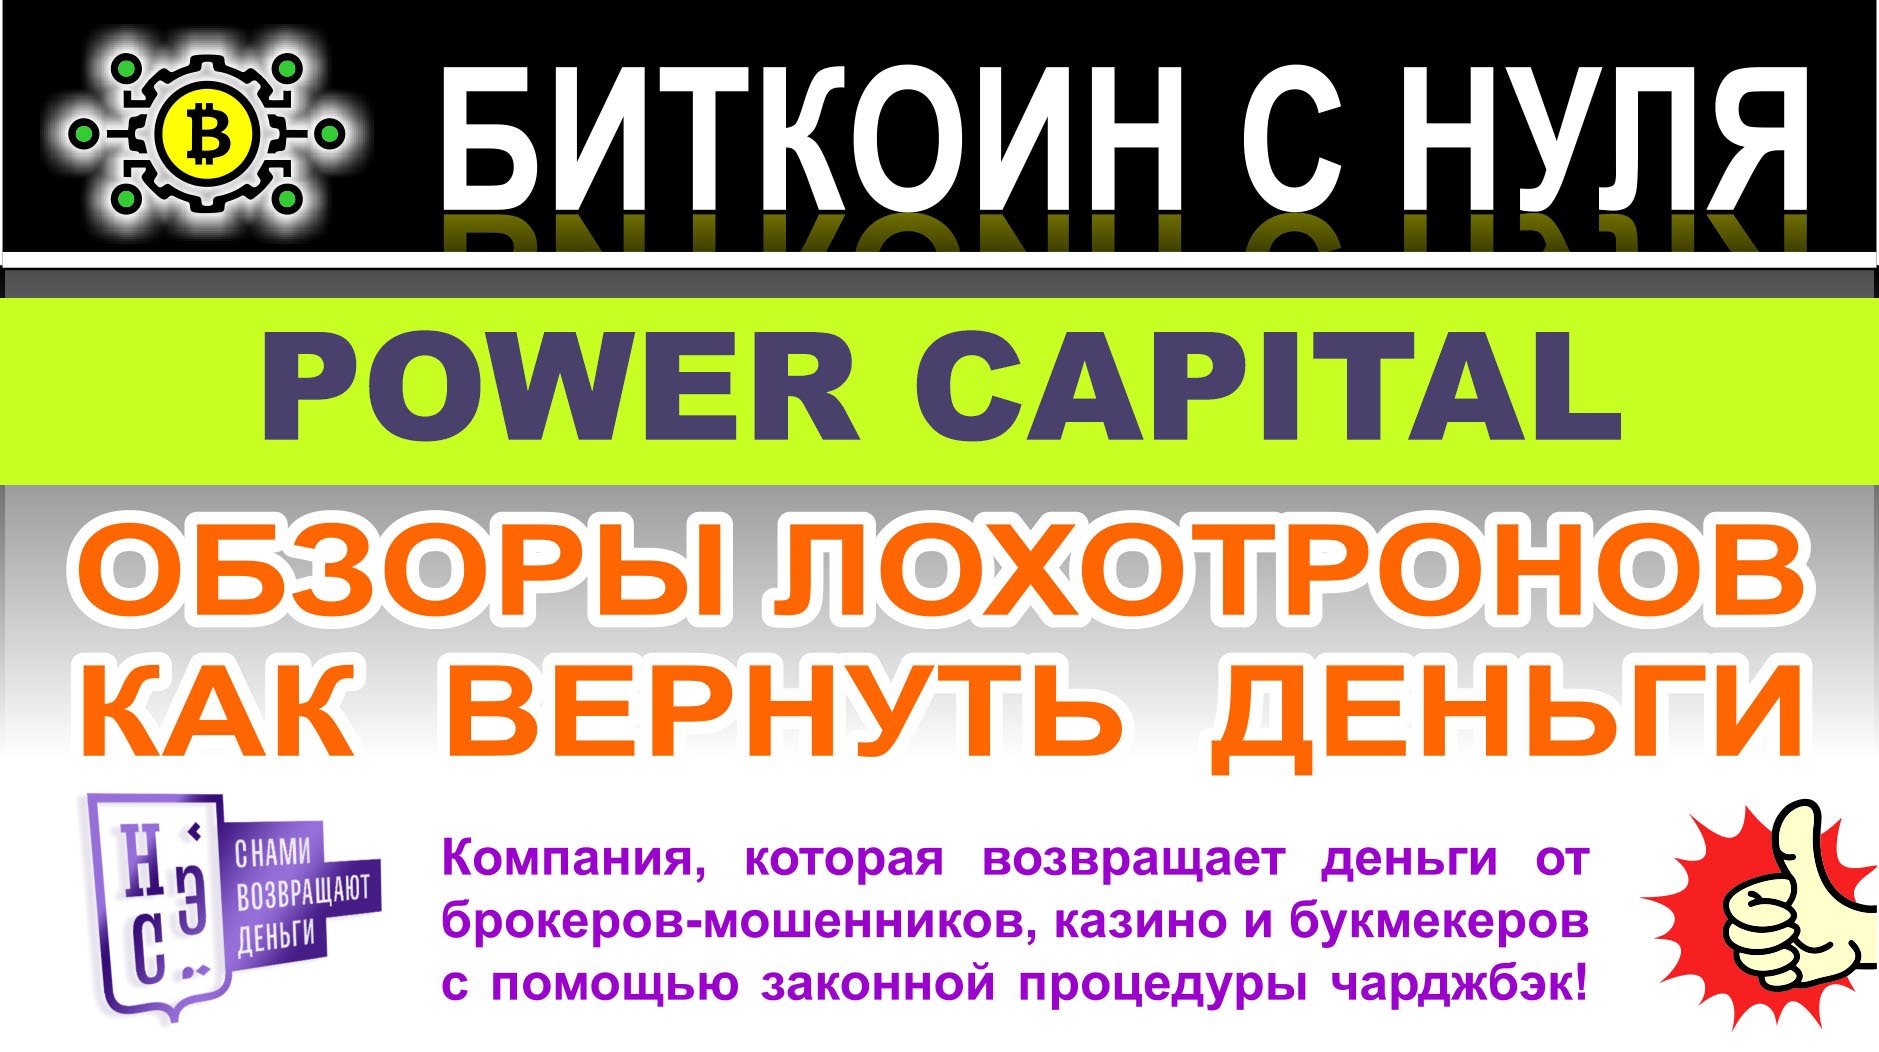 Power capital — однозначно опасный проект и лохотрон. Читаем и решаем сами.